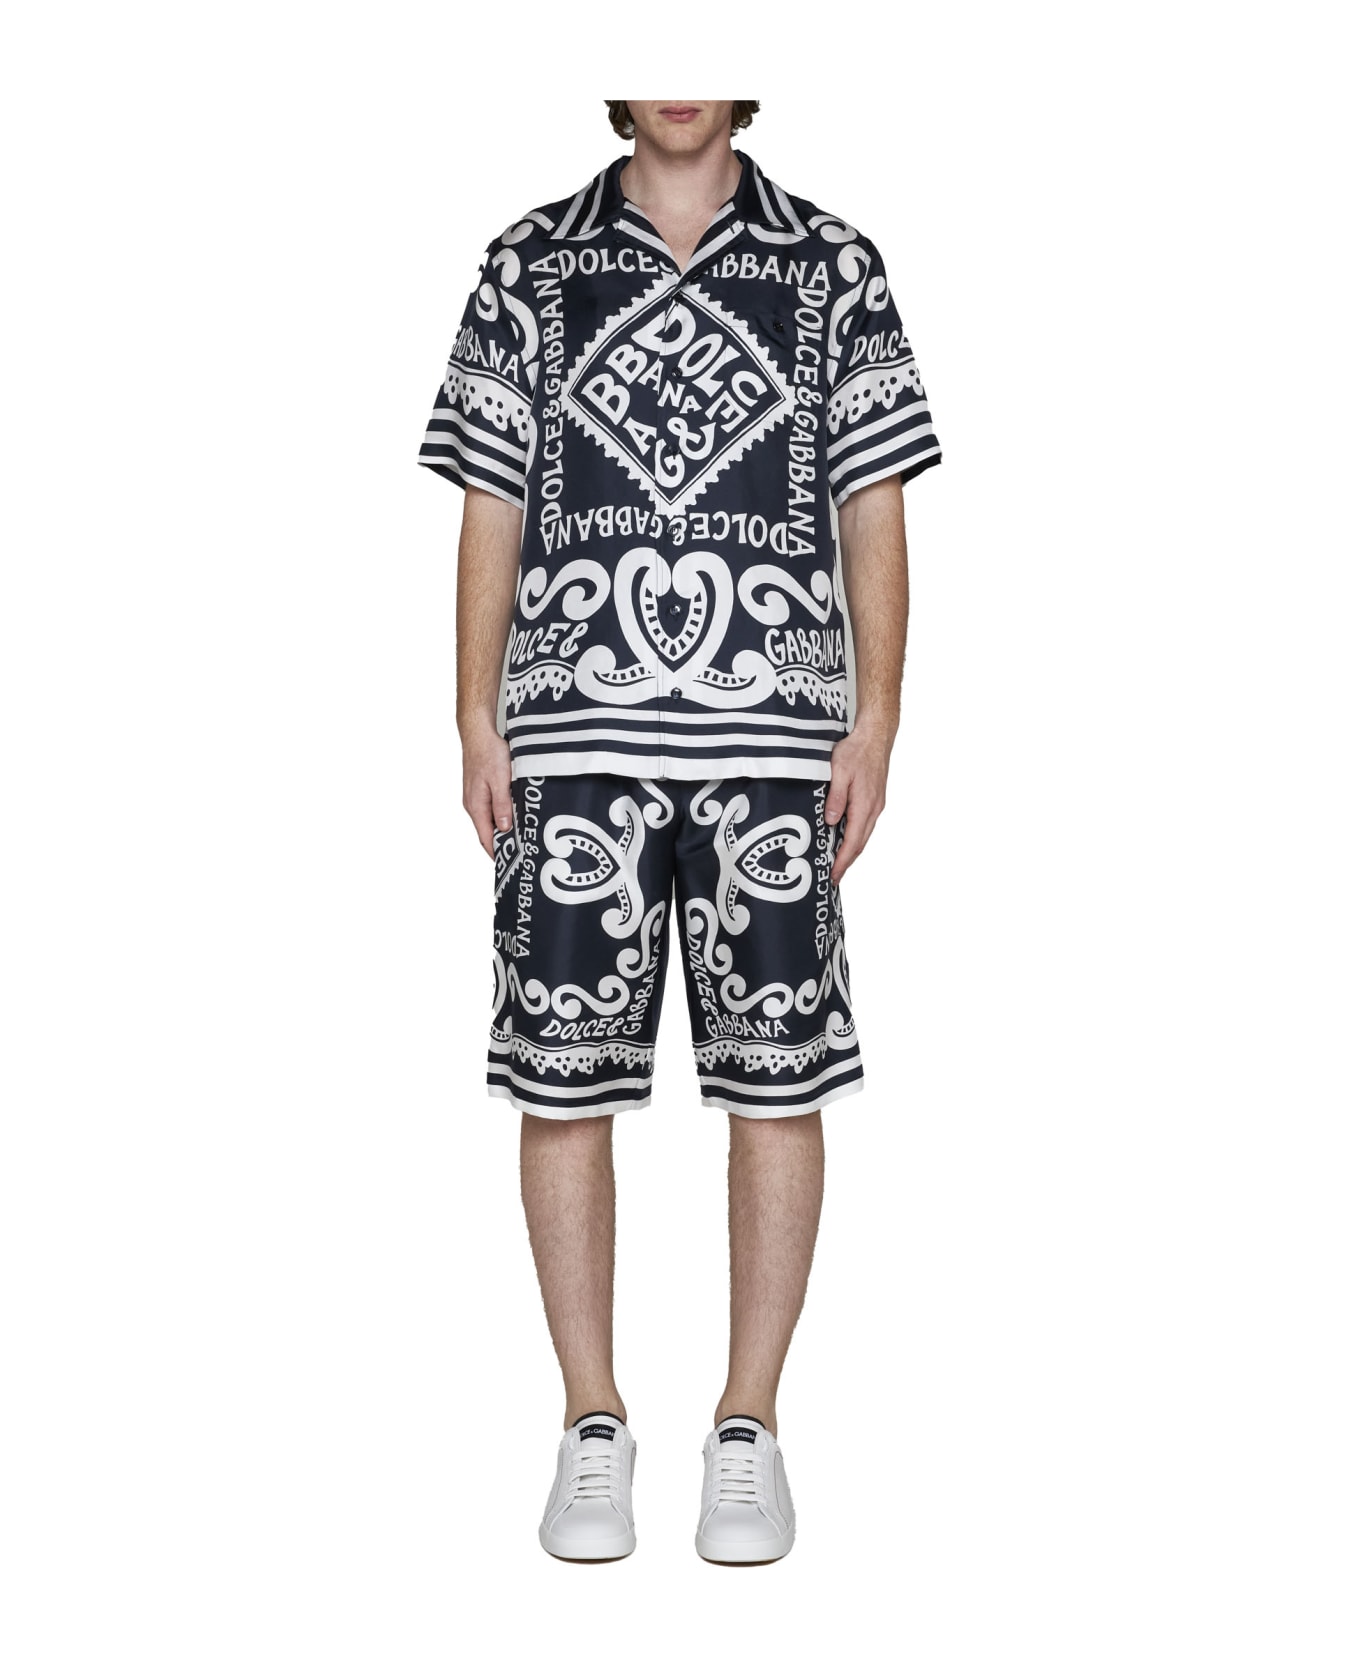 Dolce & Gabbana Bermuda Shorts - Dg Marina Blu ショートパンツ